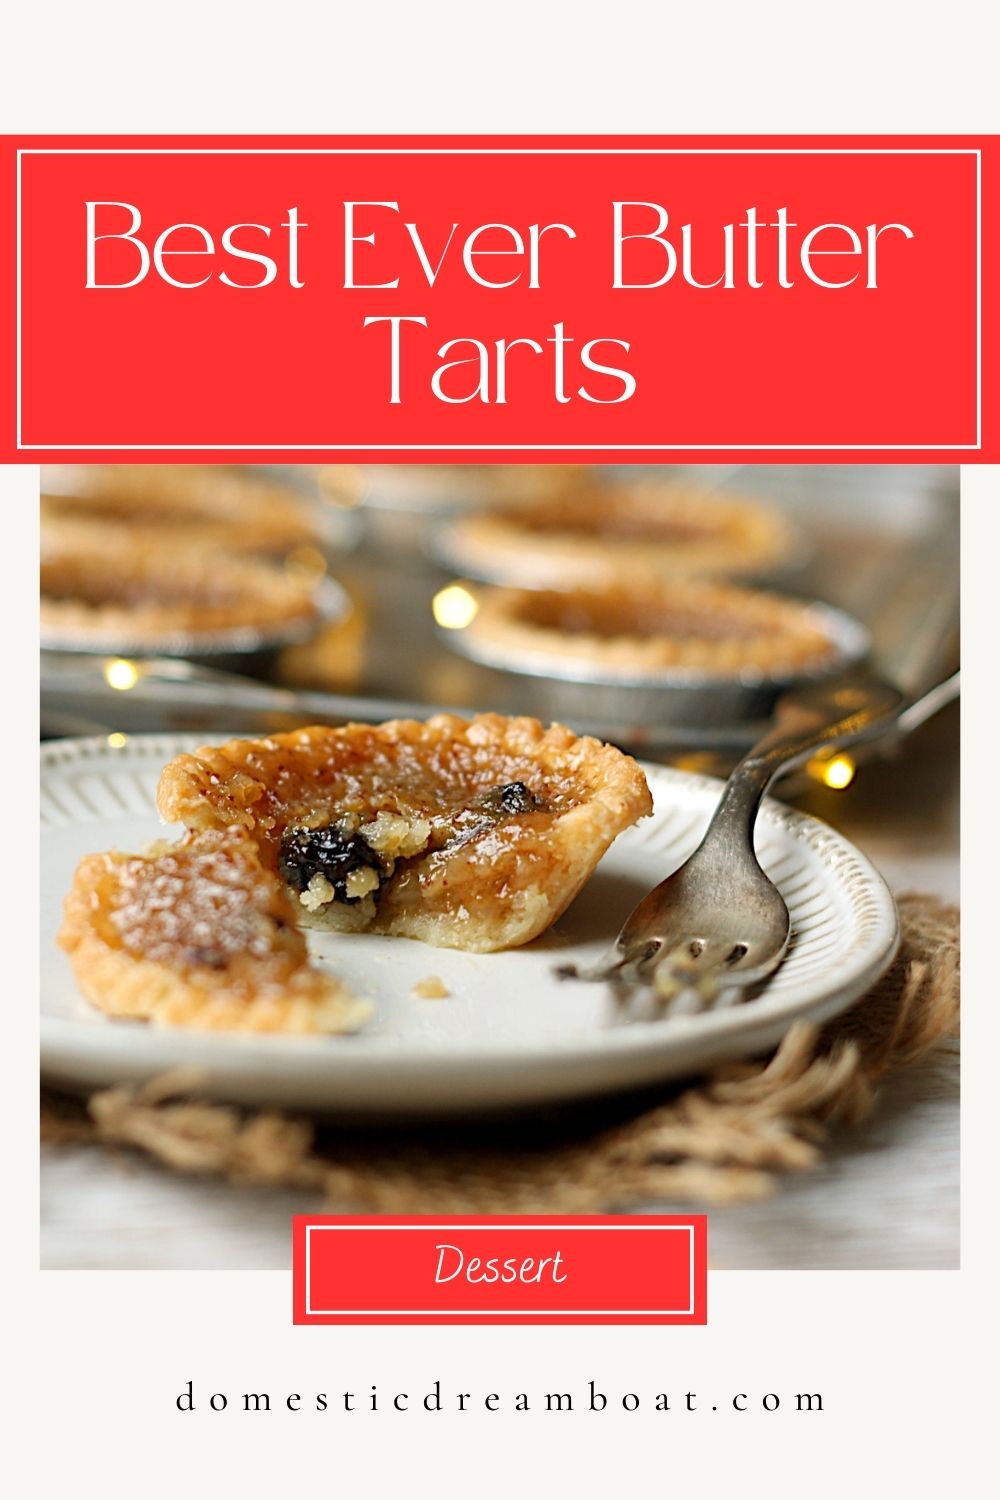 Best Ever Butter Tarts